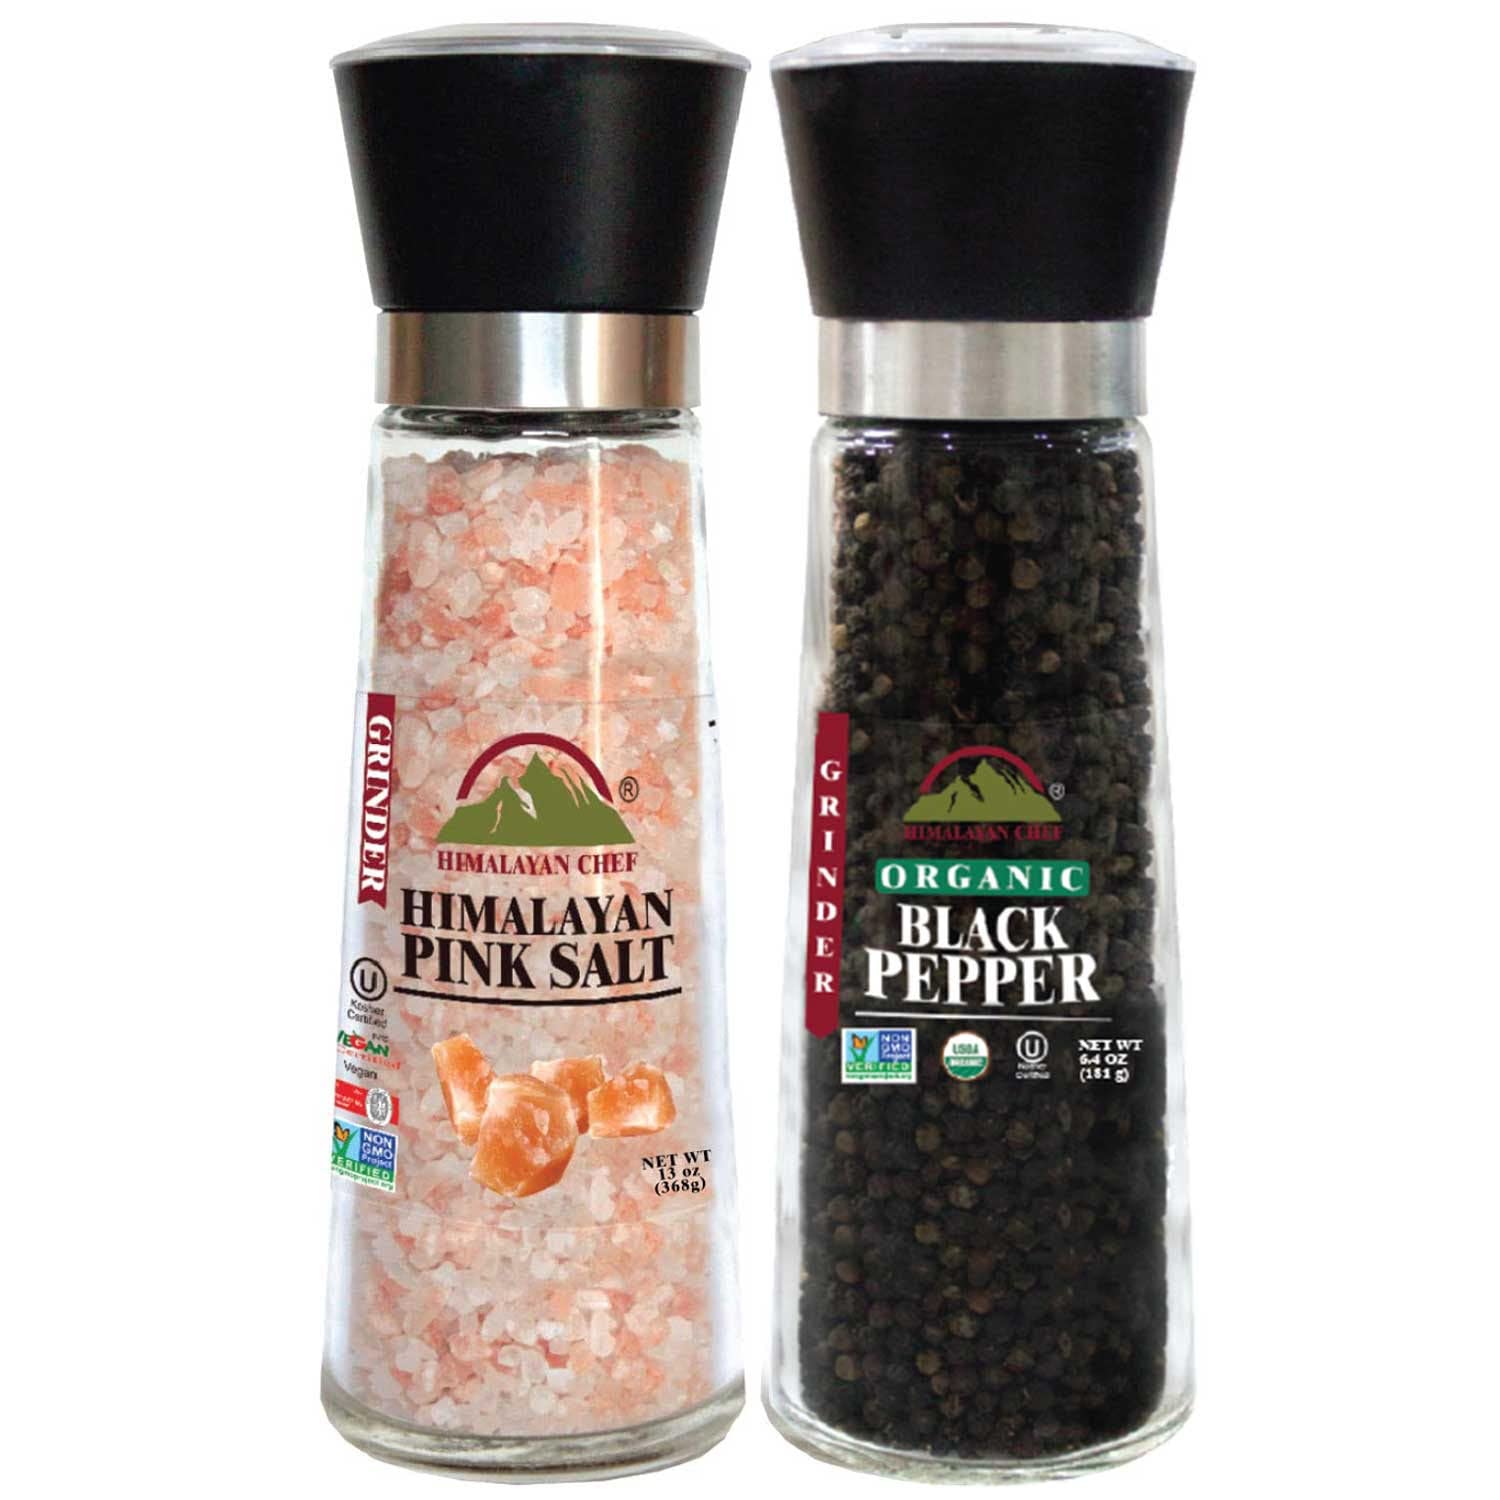 Salt and Pepper Grinder Set of 2 - Adjustable Ceramic Sea Salt